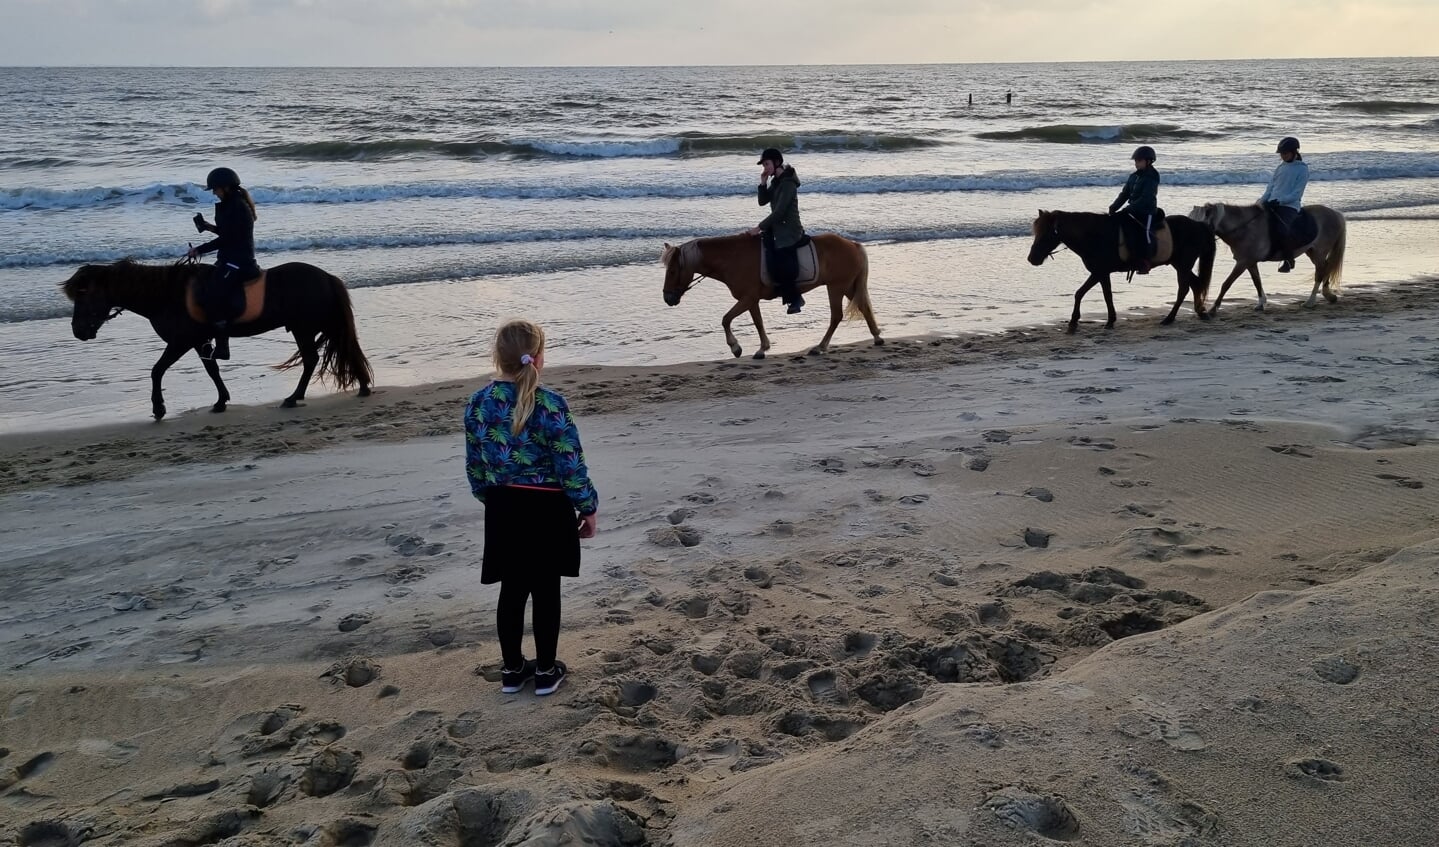 Deze foto is op 16 augustus op het strand van Zoutelande gemaakt. Mijn dochter Isabella hoopt dat ze later,  als ze meer ervaring heeft, ook paard mag rijden op het strand.